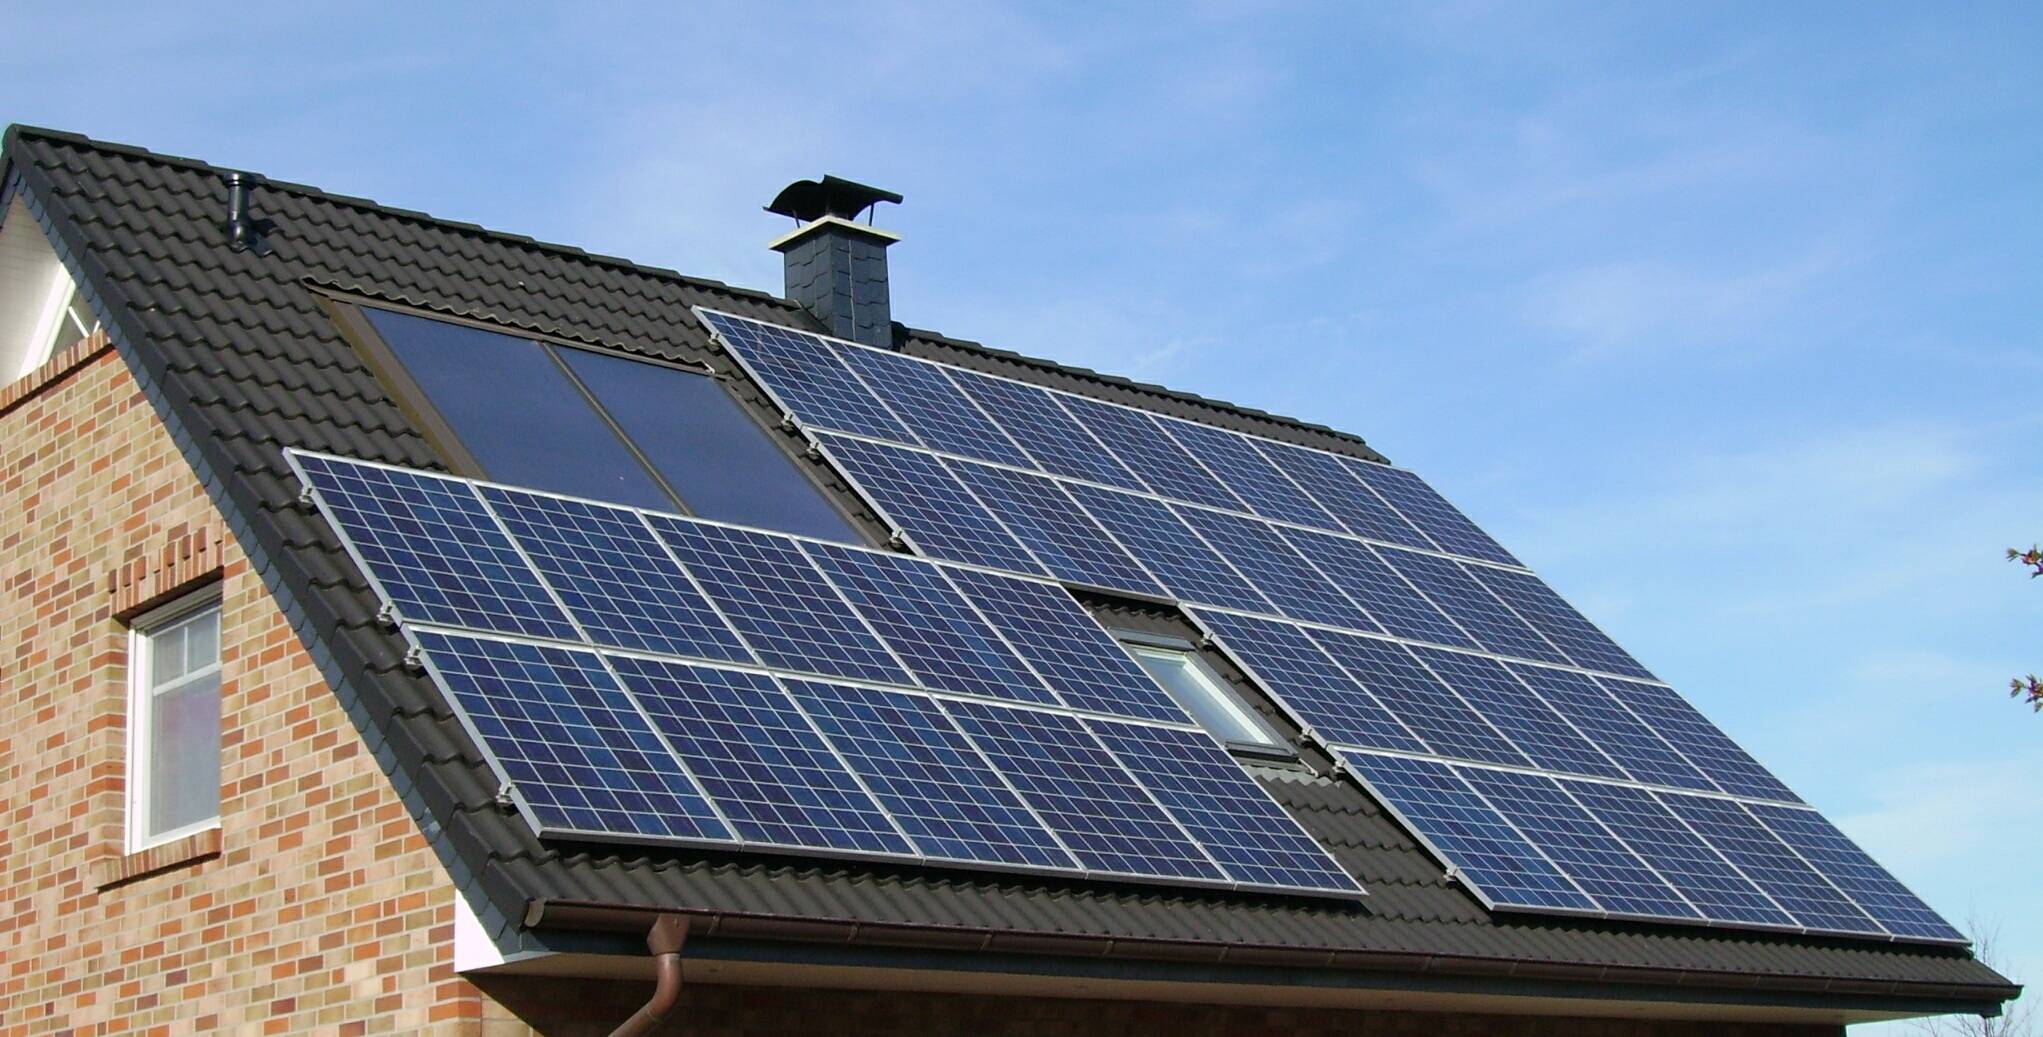  Photovoltaik-Anlagen sind derzeit stark nachgefragt. 